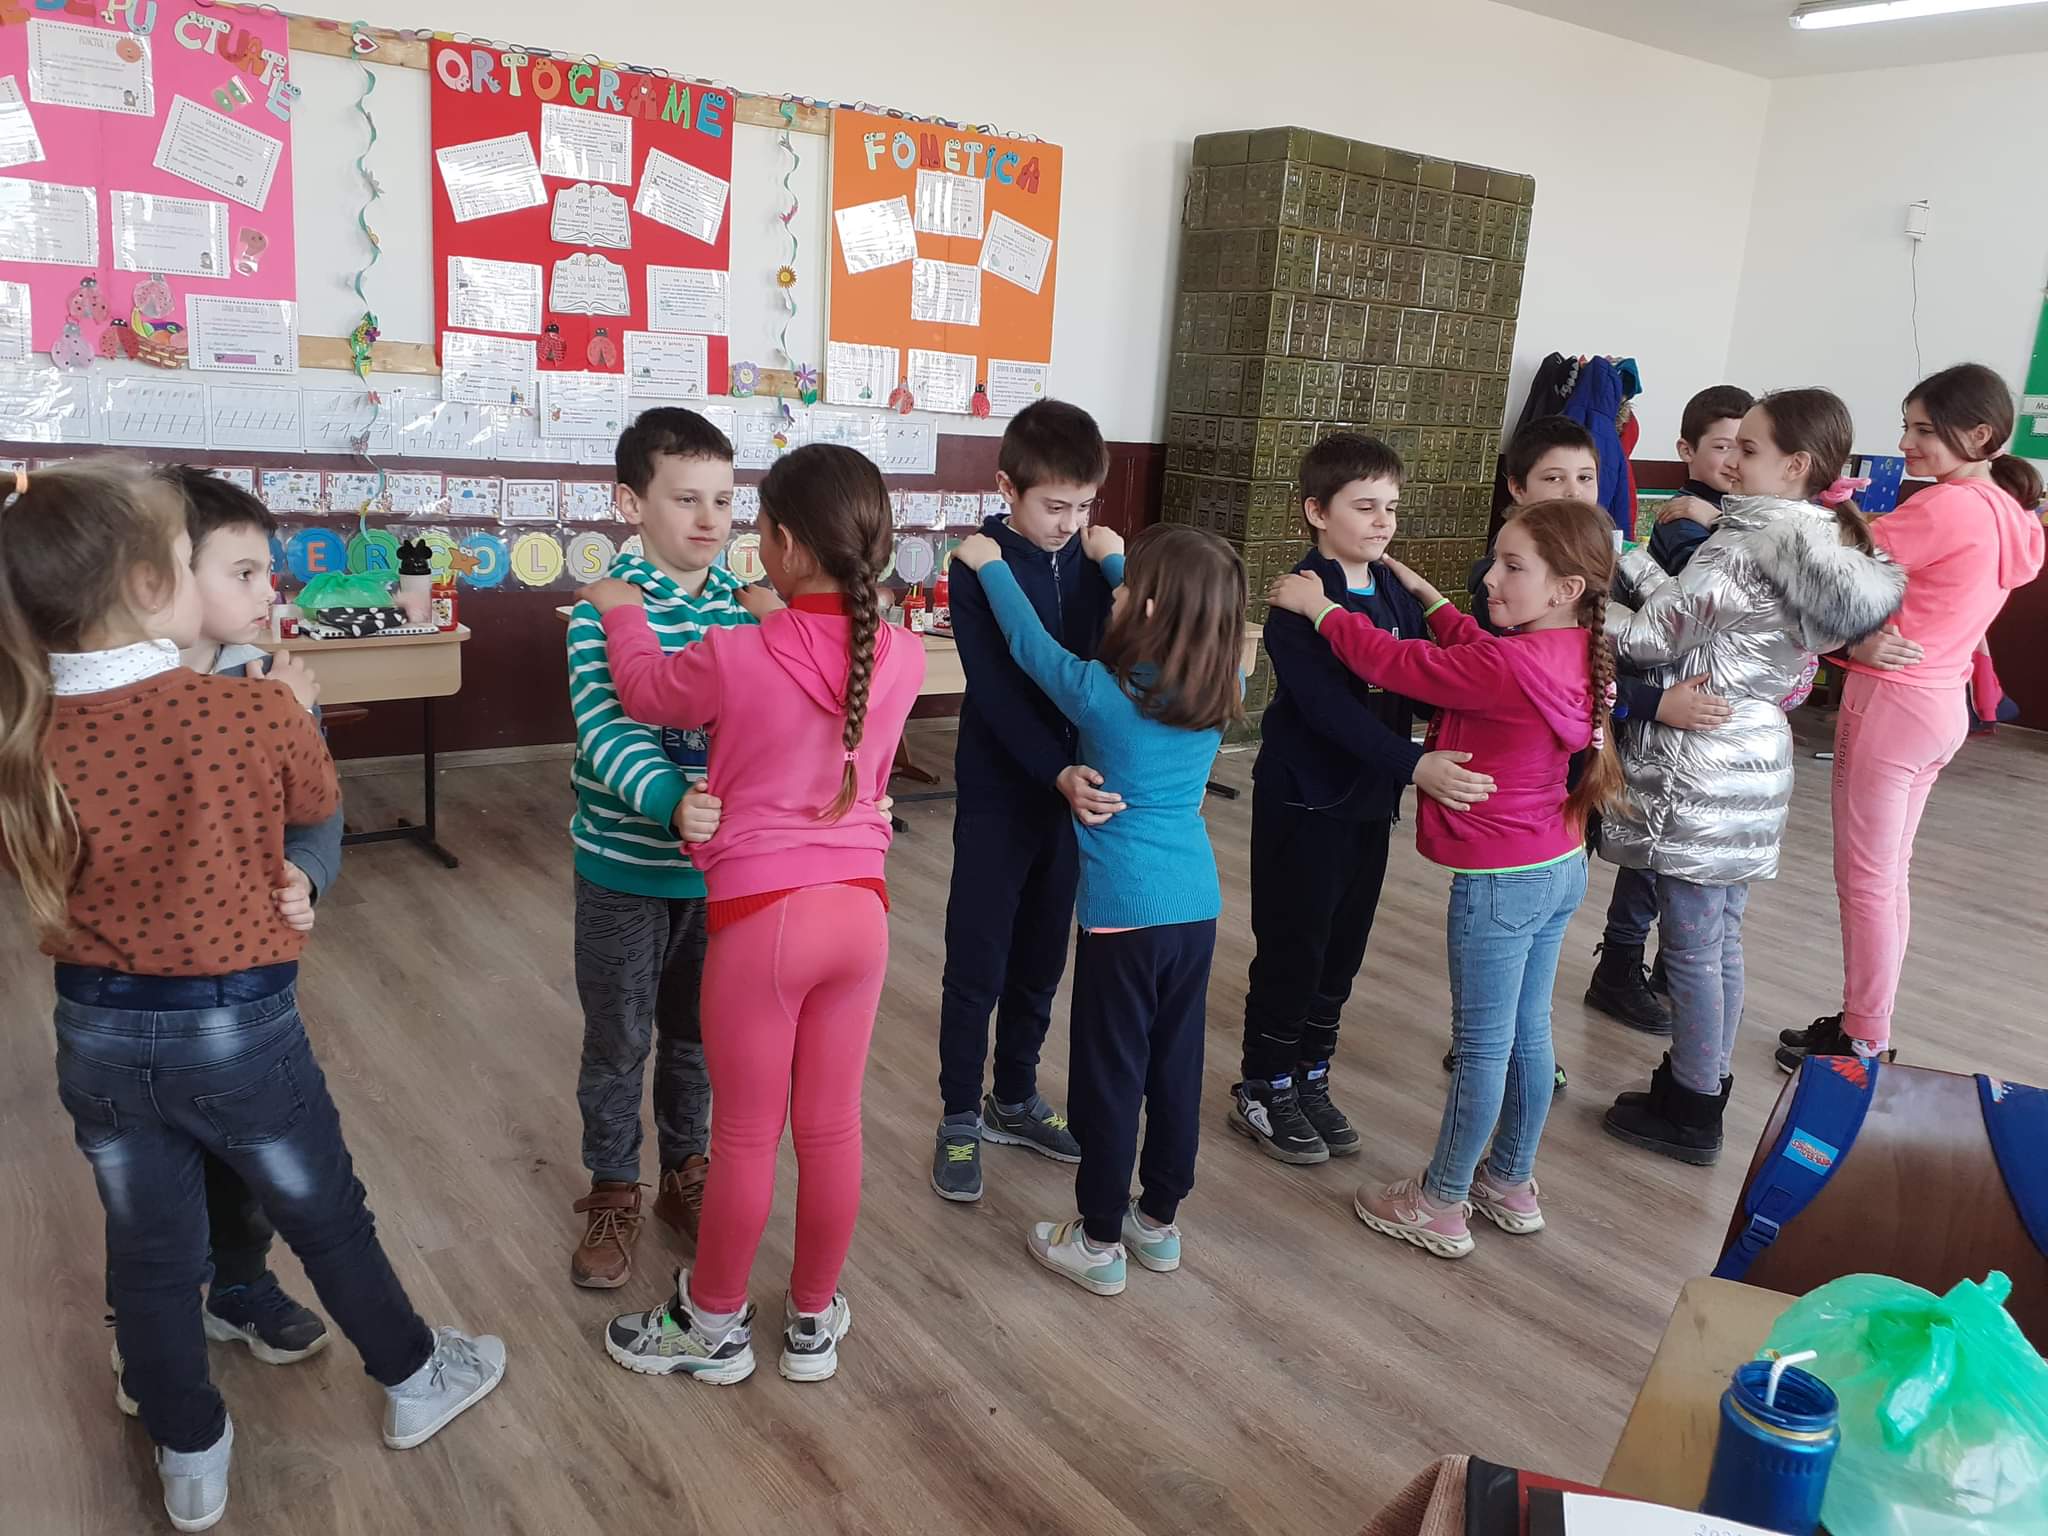 Școala Comunității Remetea Chioarului s-a redeschis pentru binele copiilor din zonă